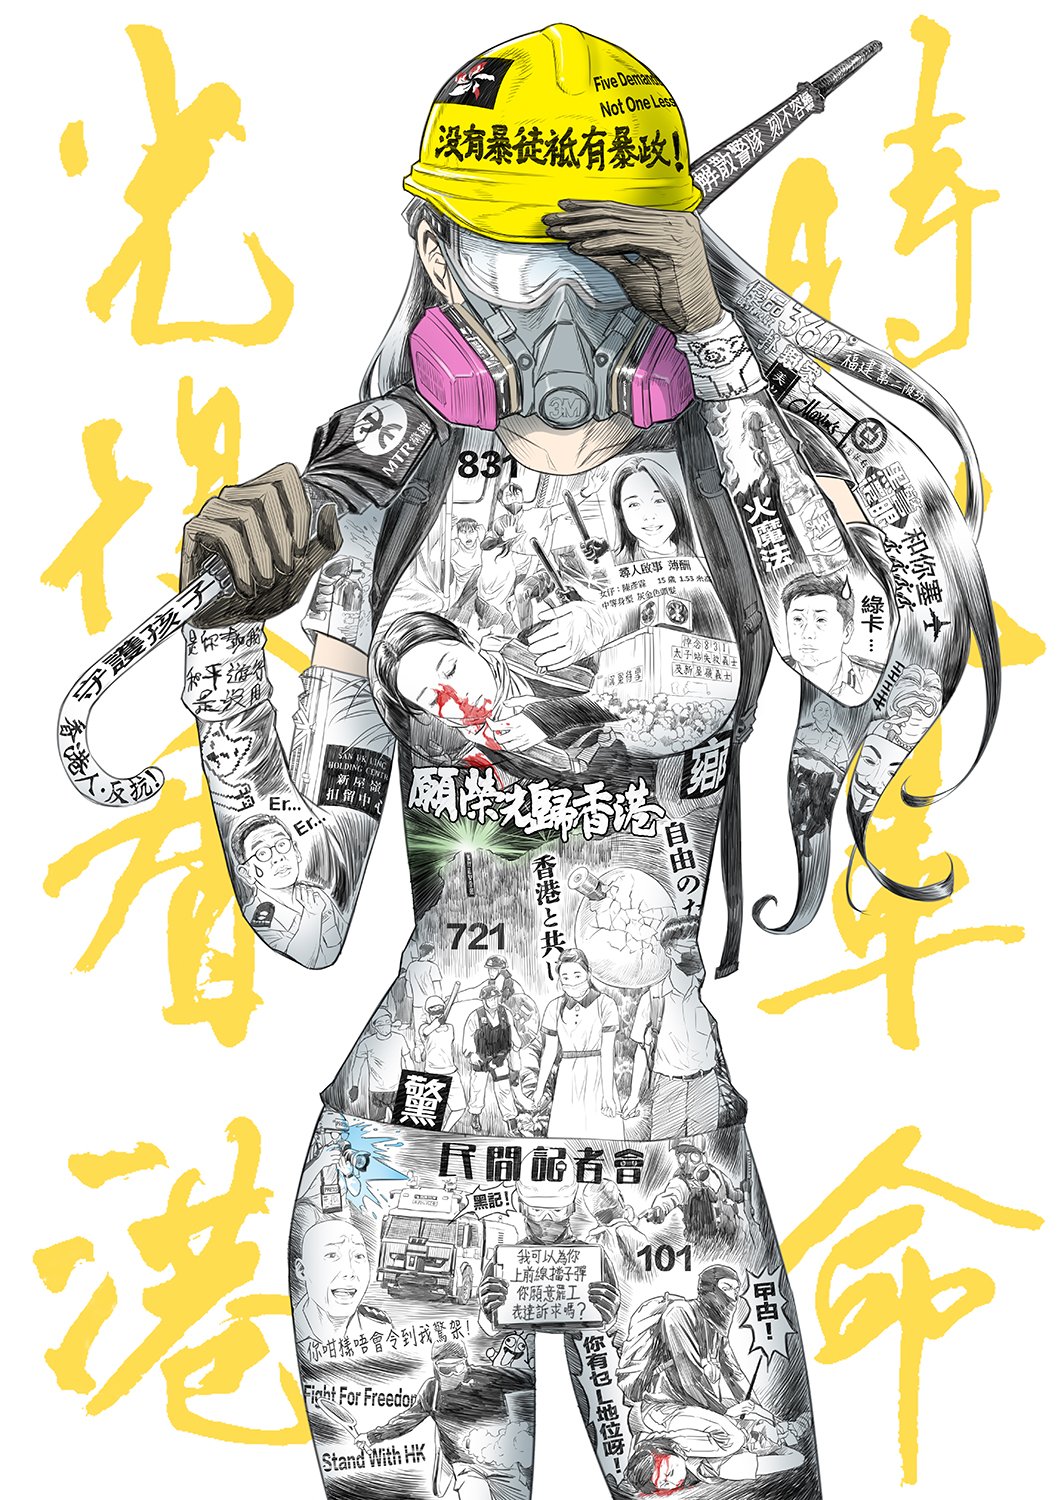 一位匿名藝術家「啟蘭蛋」（Kai Lan Egg）以日本動漫的方式描繪著2019年以來香港人的反送中抗爭，圖為巨幅《光復香港 時代革命》日本動漫作品。（圖片來源：chinaunderground.com）